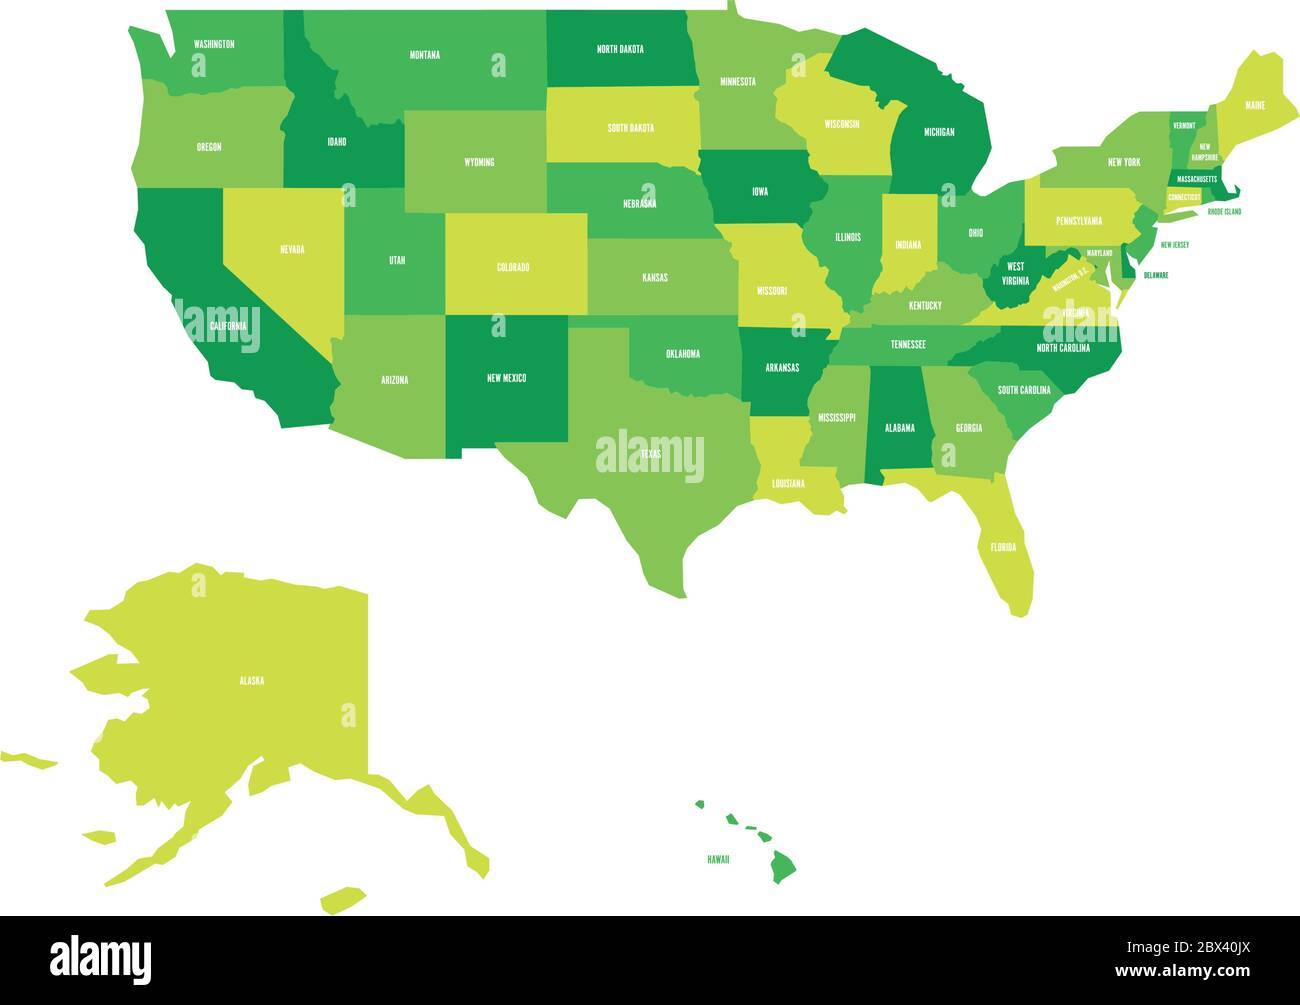 Mappa politica degli Stati Uniti d'America, USA. Semplice mappa vettoriale piatta in quattro tonalità di verde con etichette bianche su sfondo bianco. Illustrazione Vettoriale